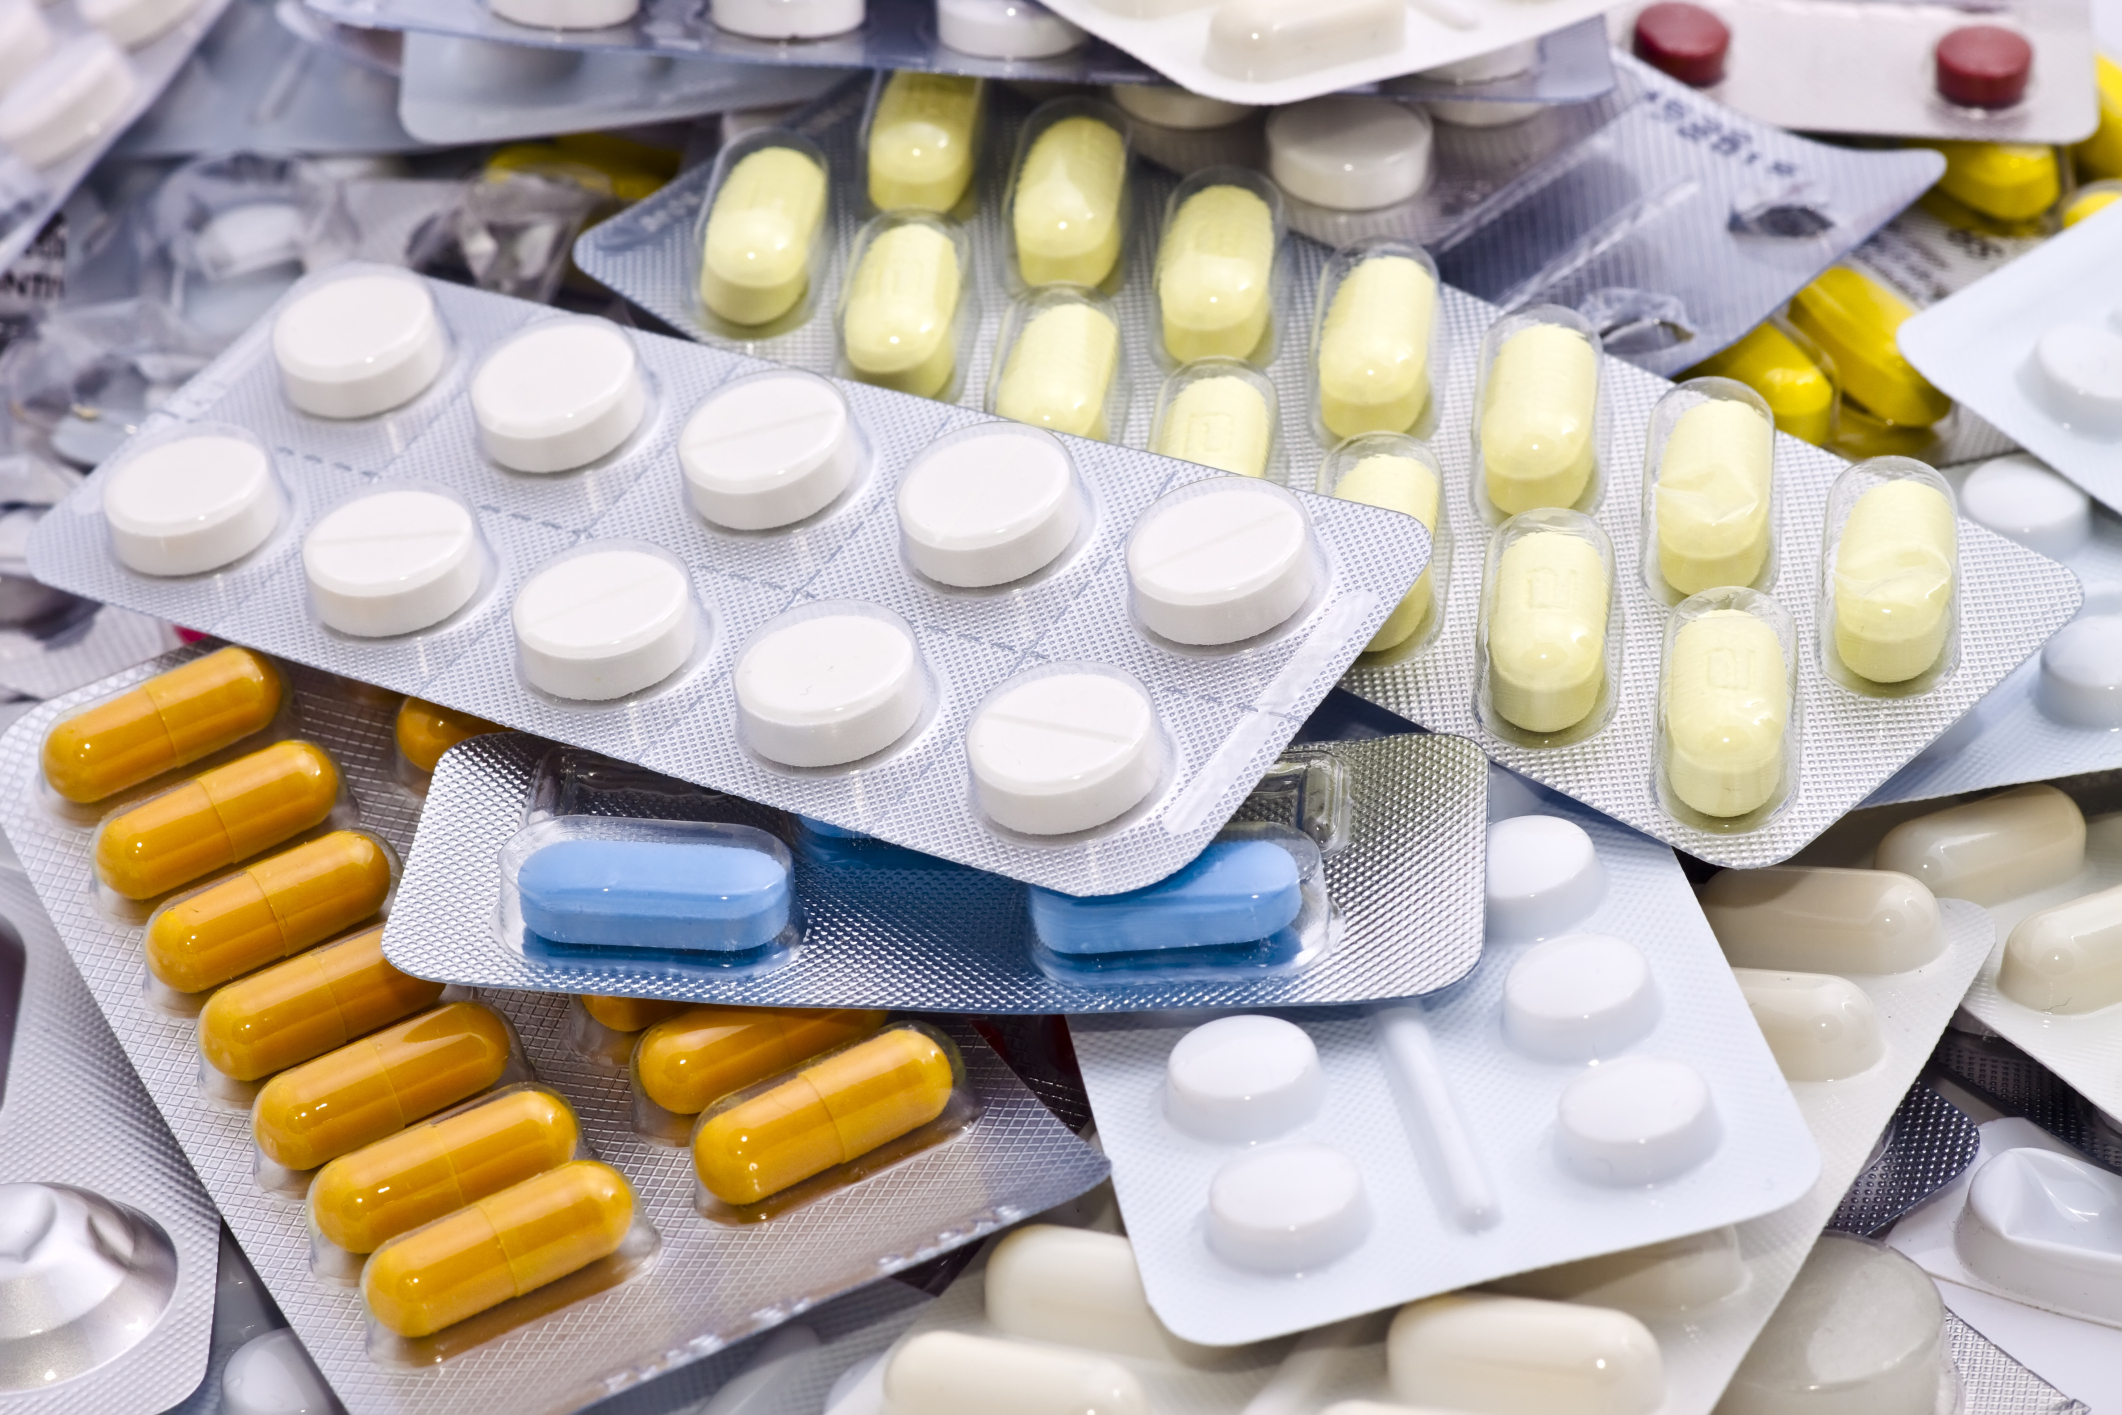 Правительство дополнительно профинансирует программу бесплатных лекарств для льготников